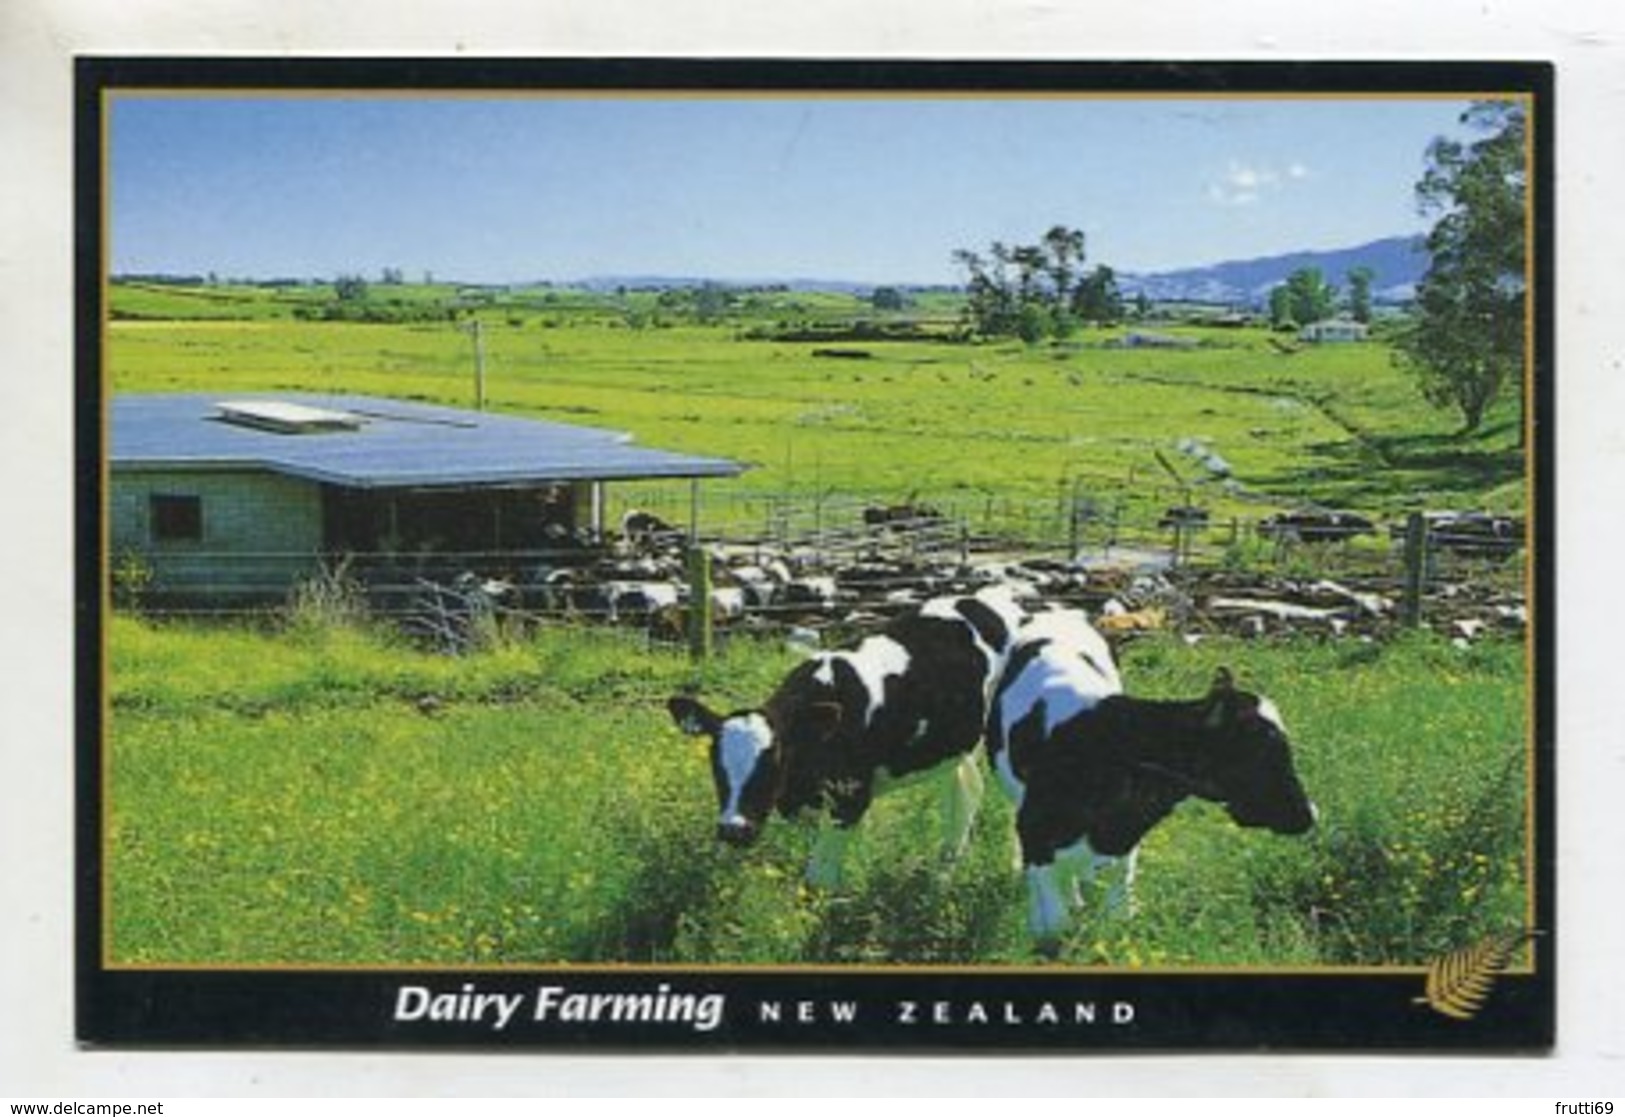 NEW ZEALAND - AK 352308 Dairy Farming - New Zealand